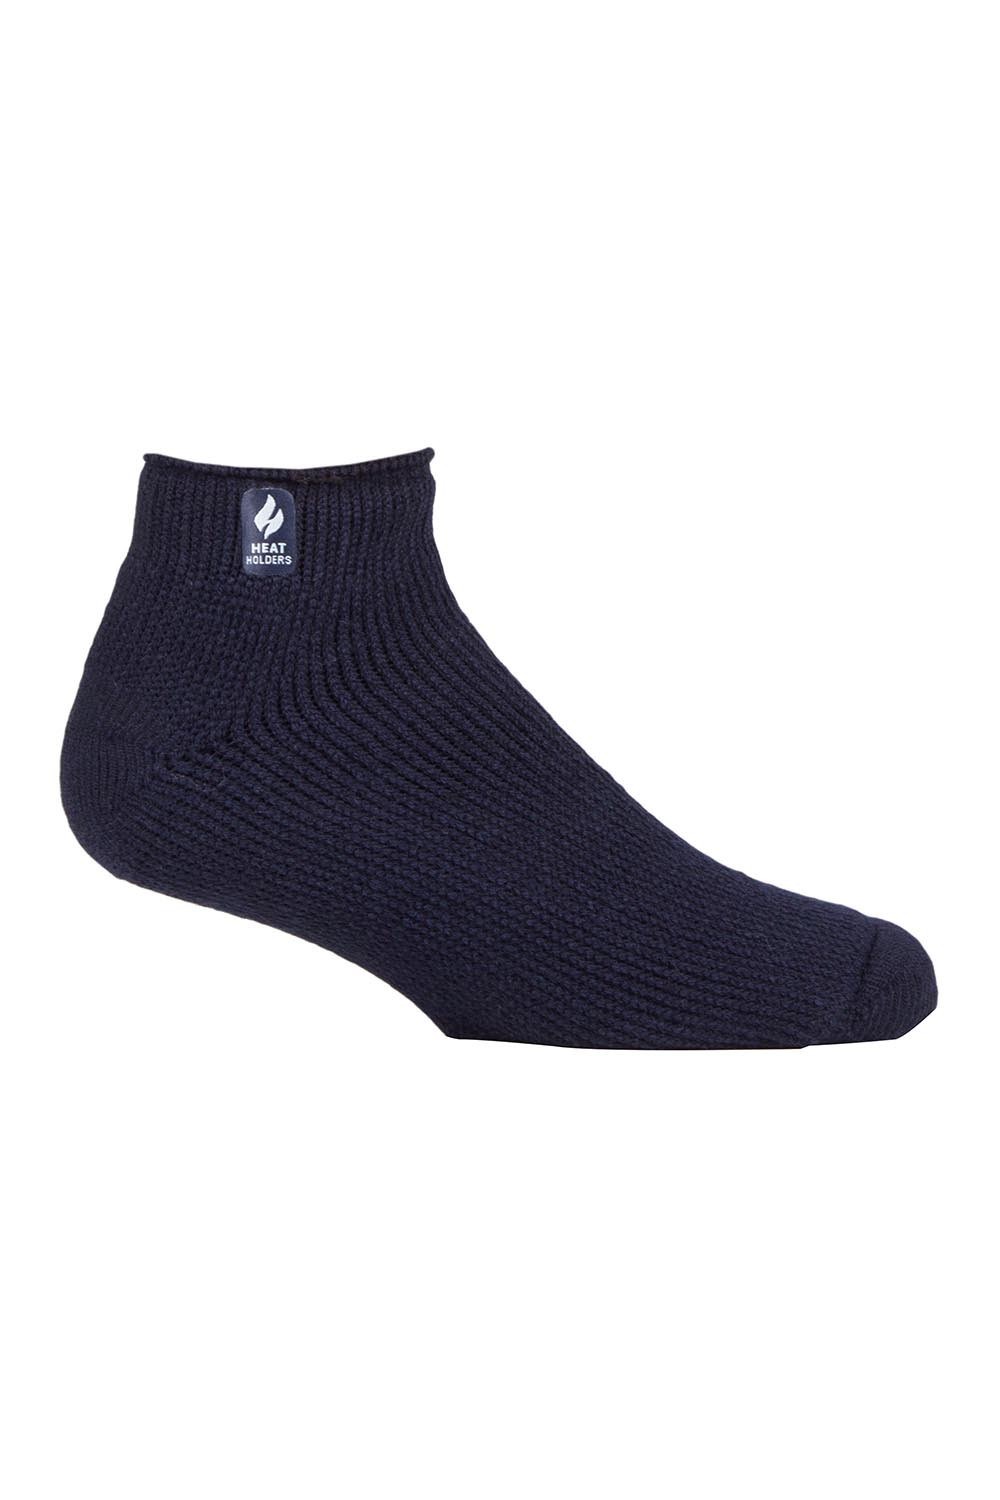 Mens Thermal Trainer Socks -